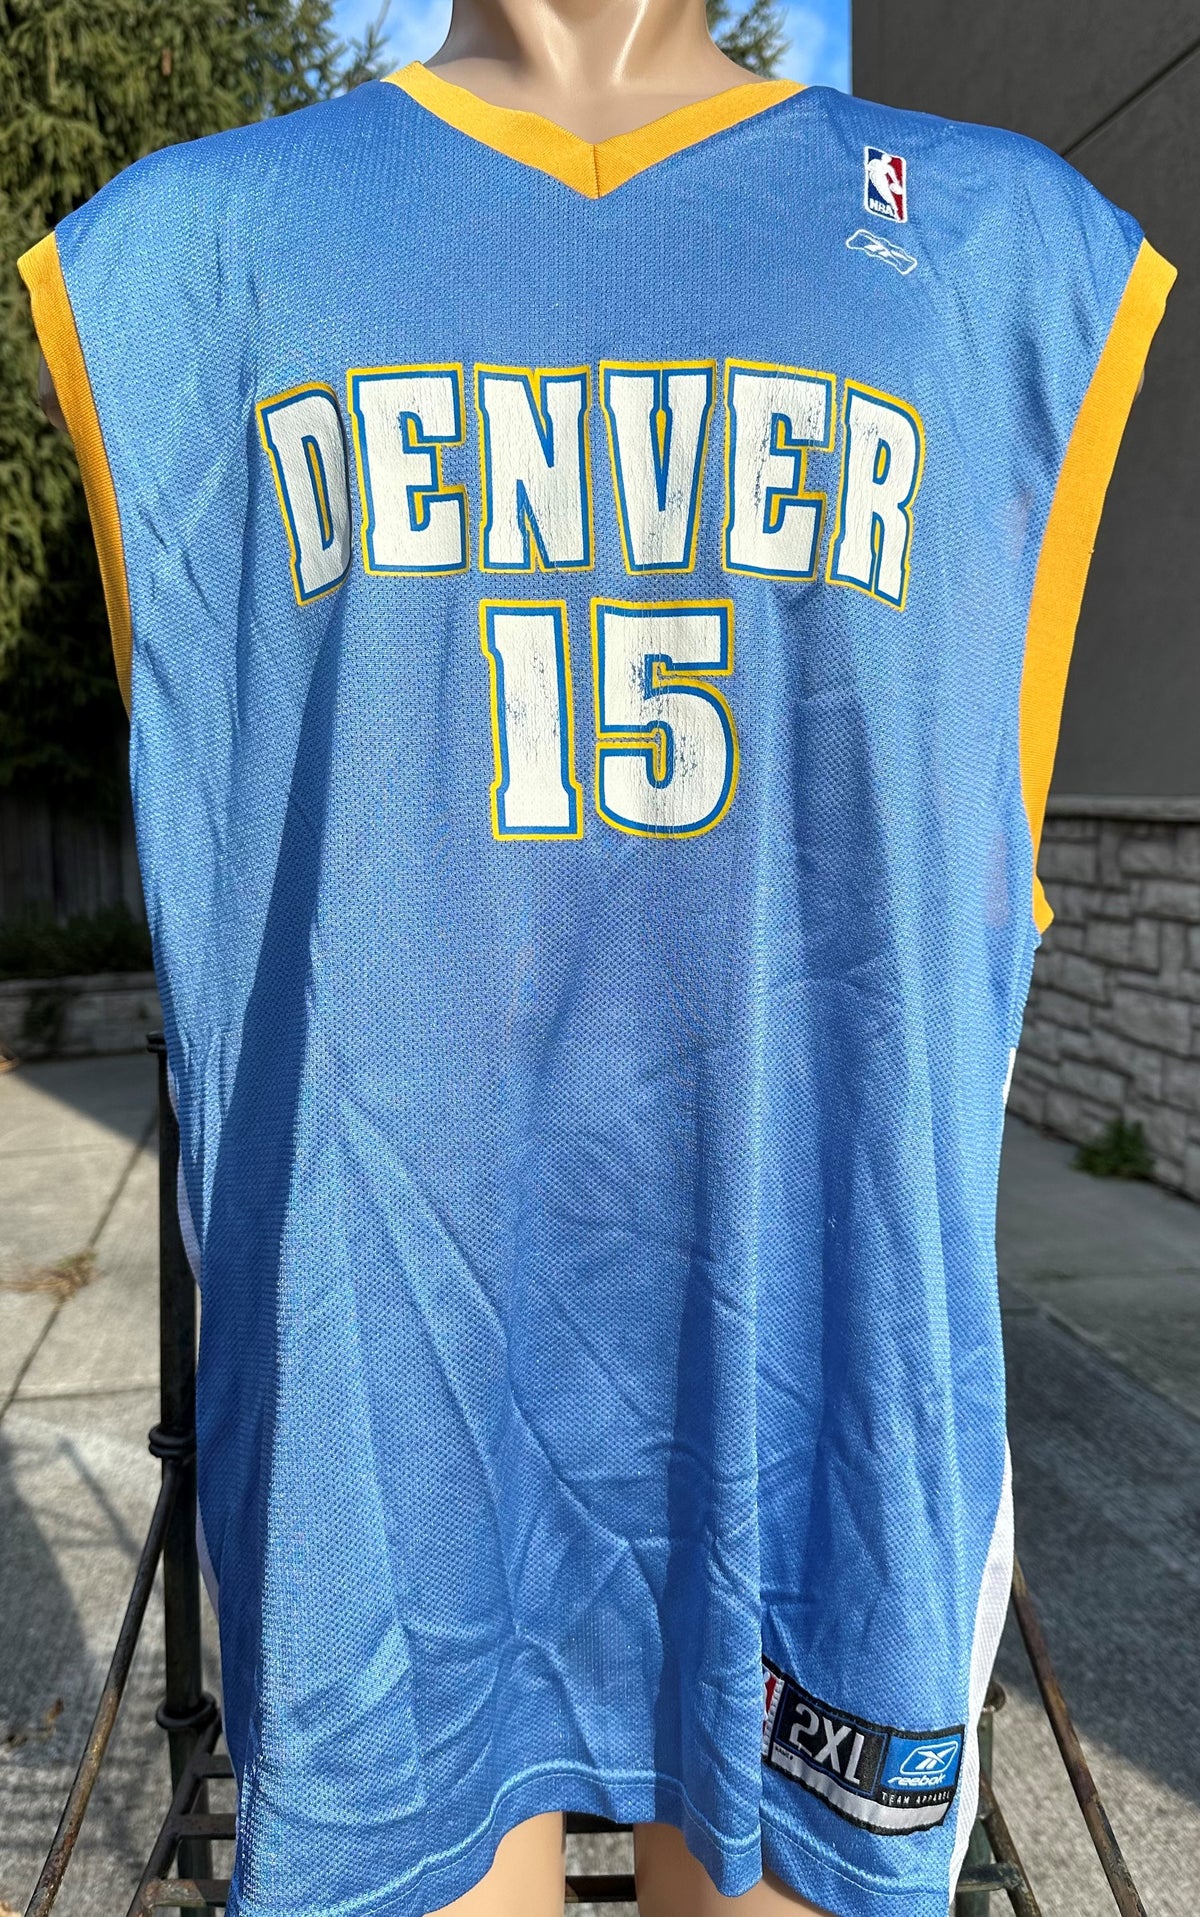 Vintage Reebok Carmelo Anthony Denver Nuggets Jersey (XXL)